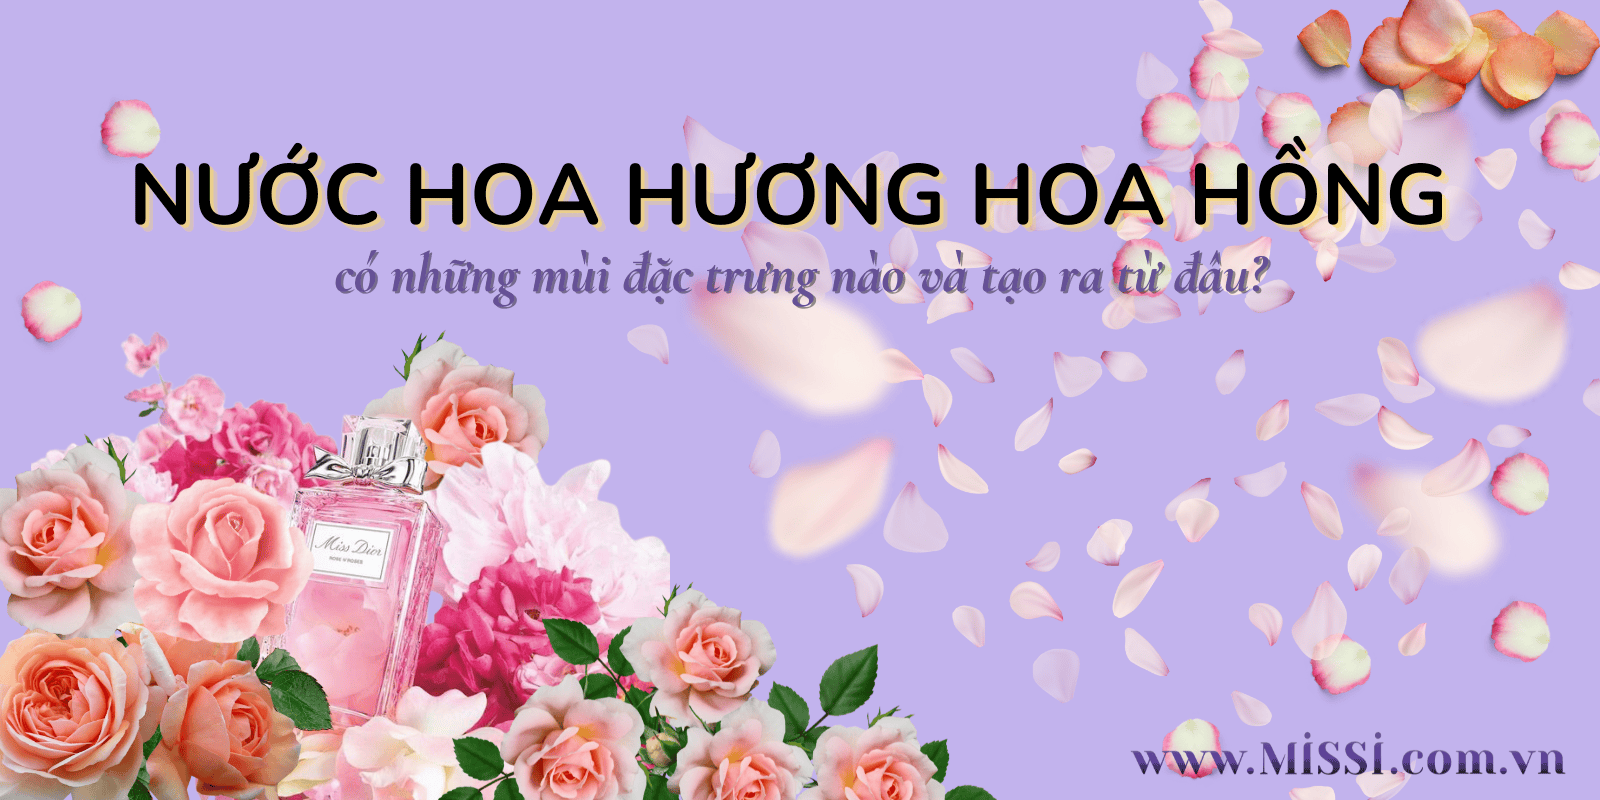 nuoc hoa huong hoa hong 1 1